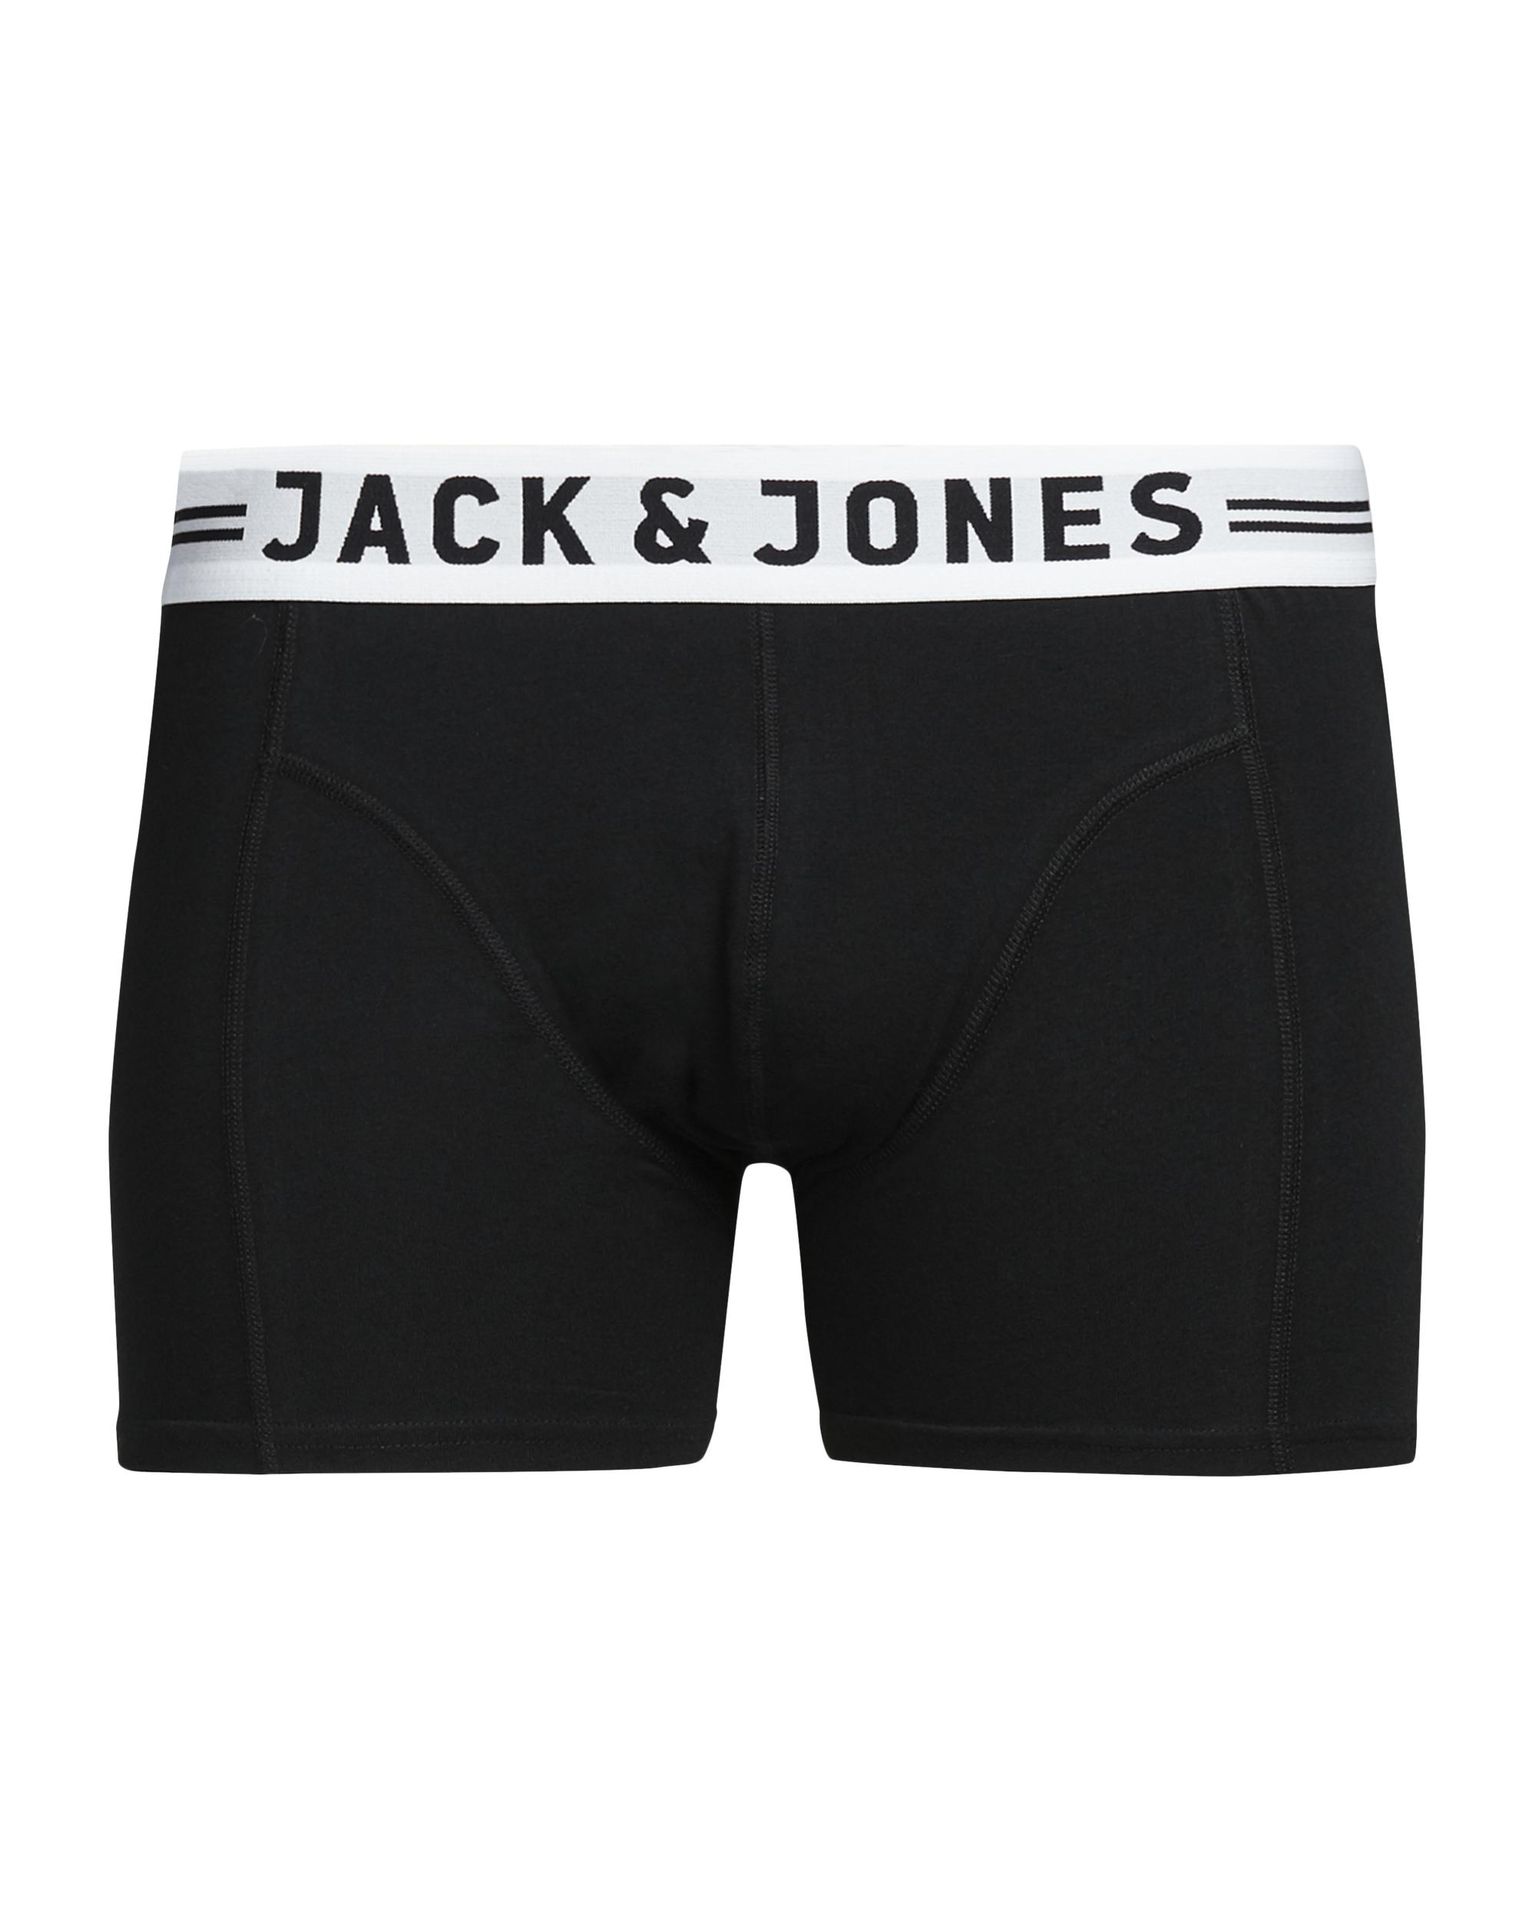 Jack & Jones JACSENSE TRUNKS NOOS - Black Black 2900134064054